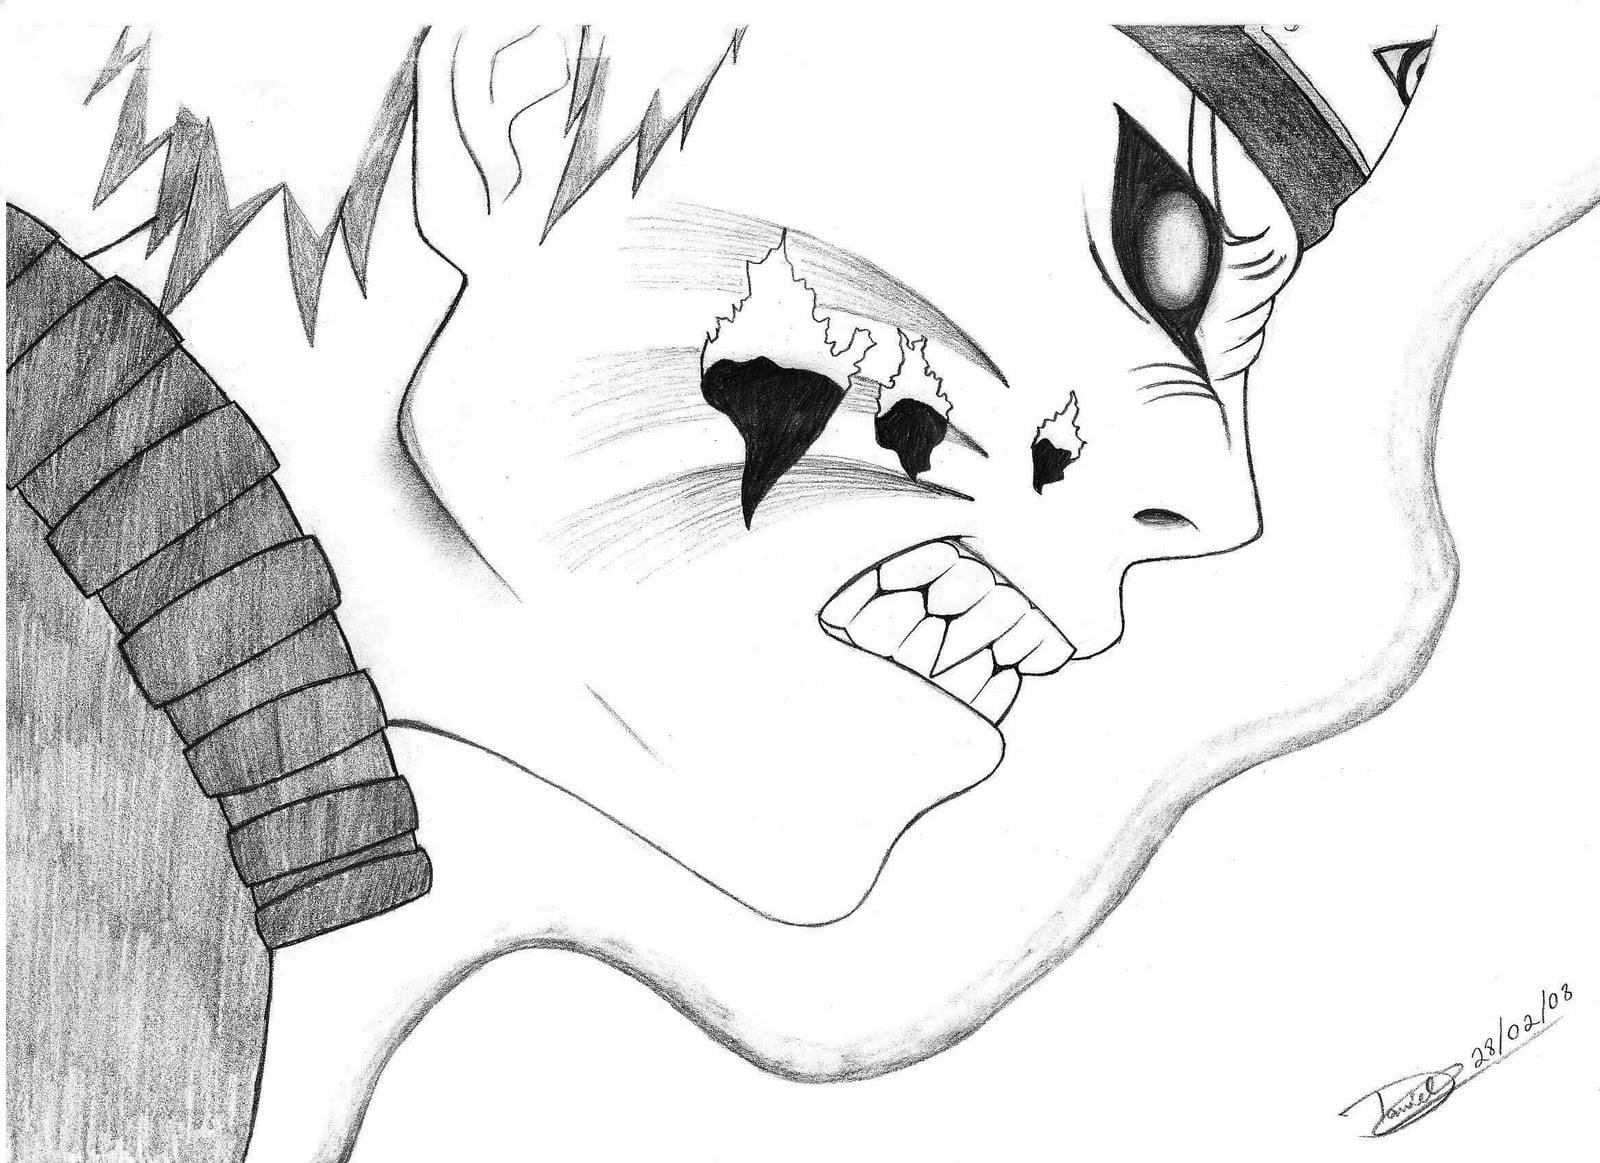 Desenhos Do Naruto